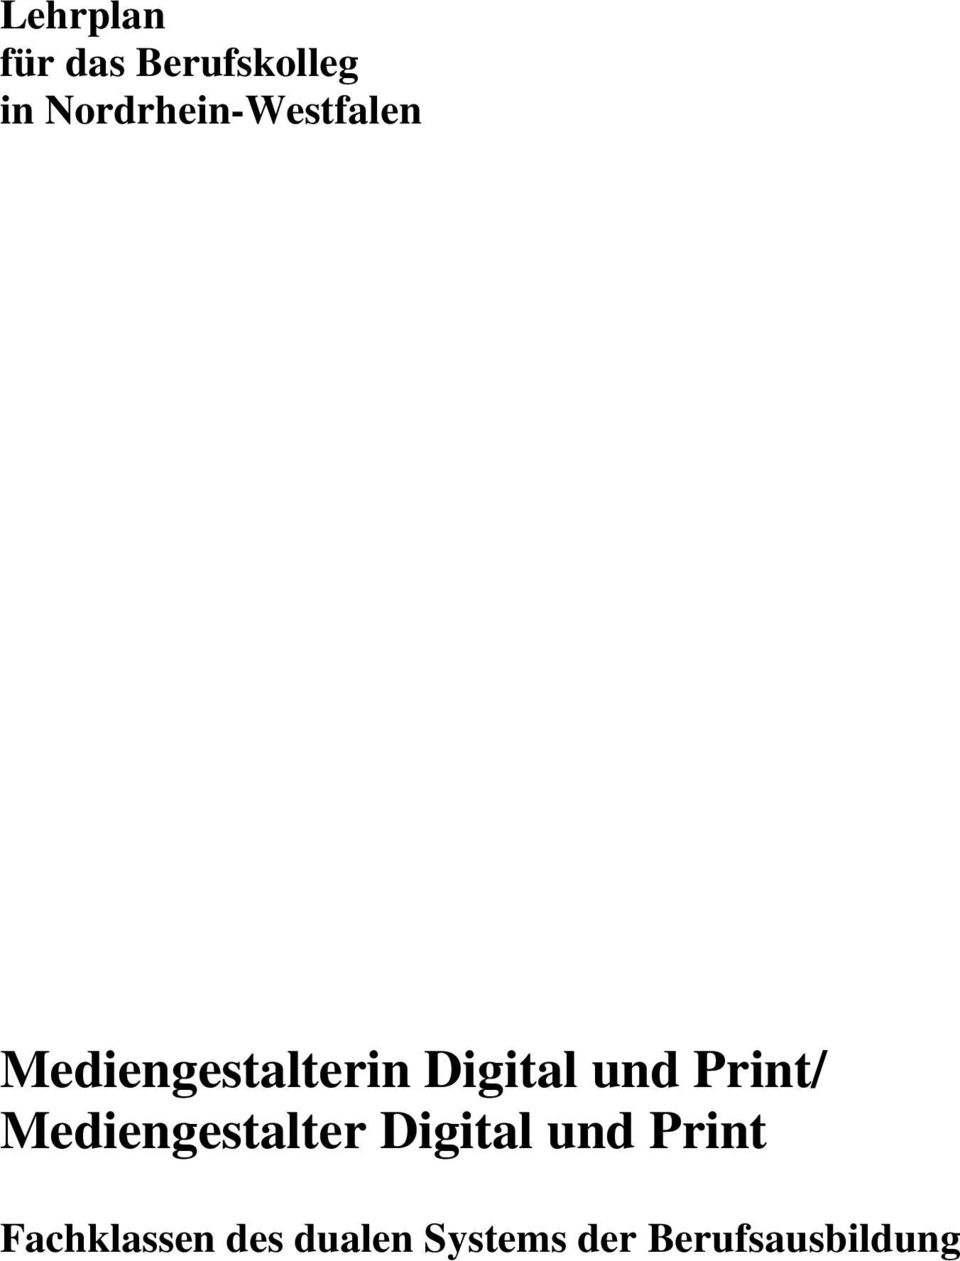 Digital Print/ Mediengestalter Digital